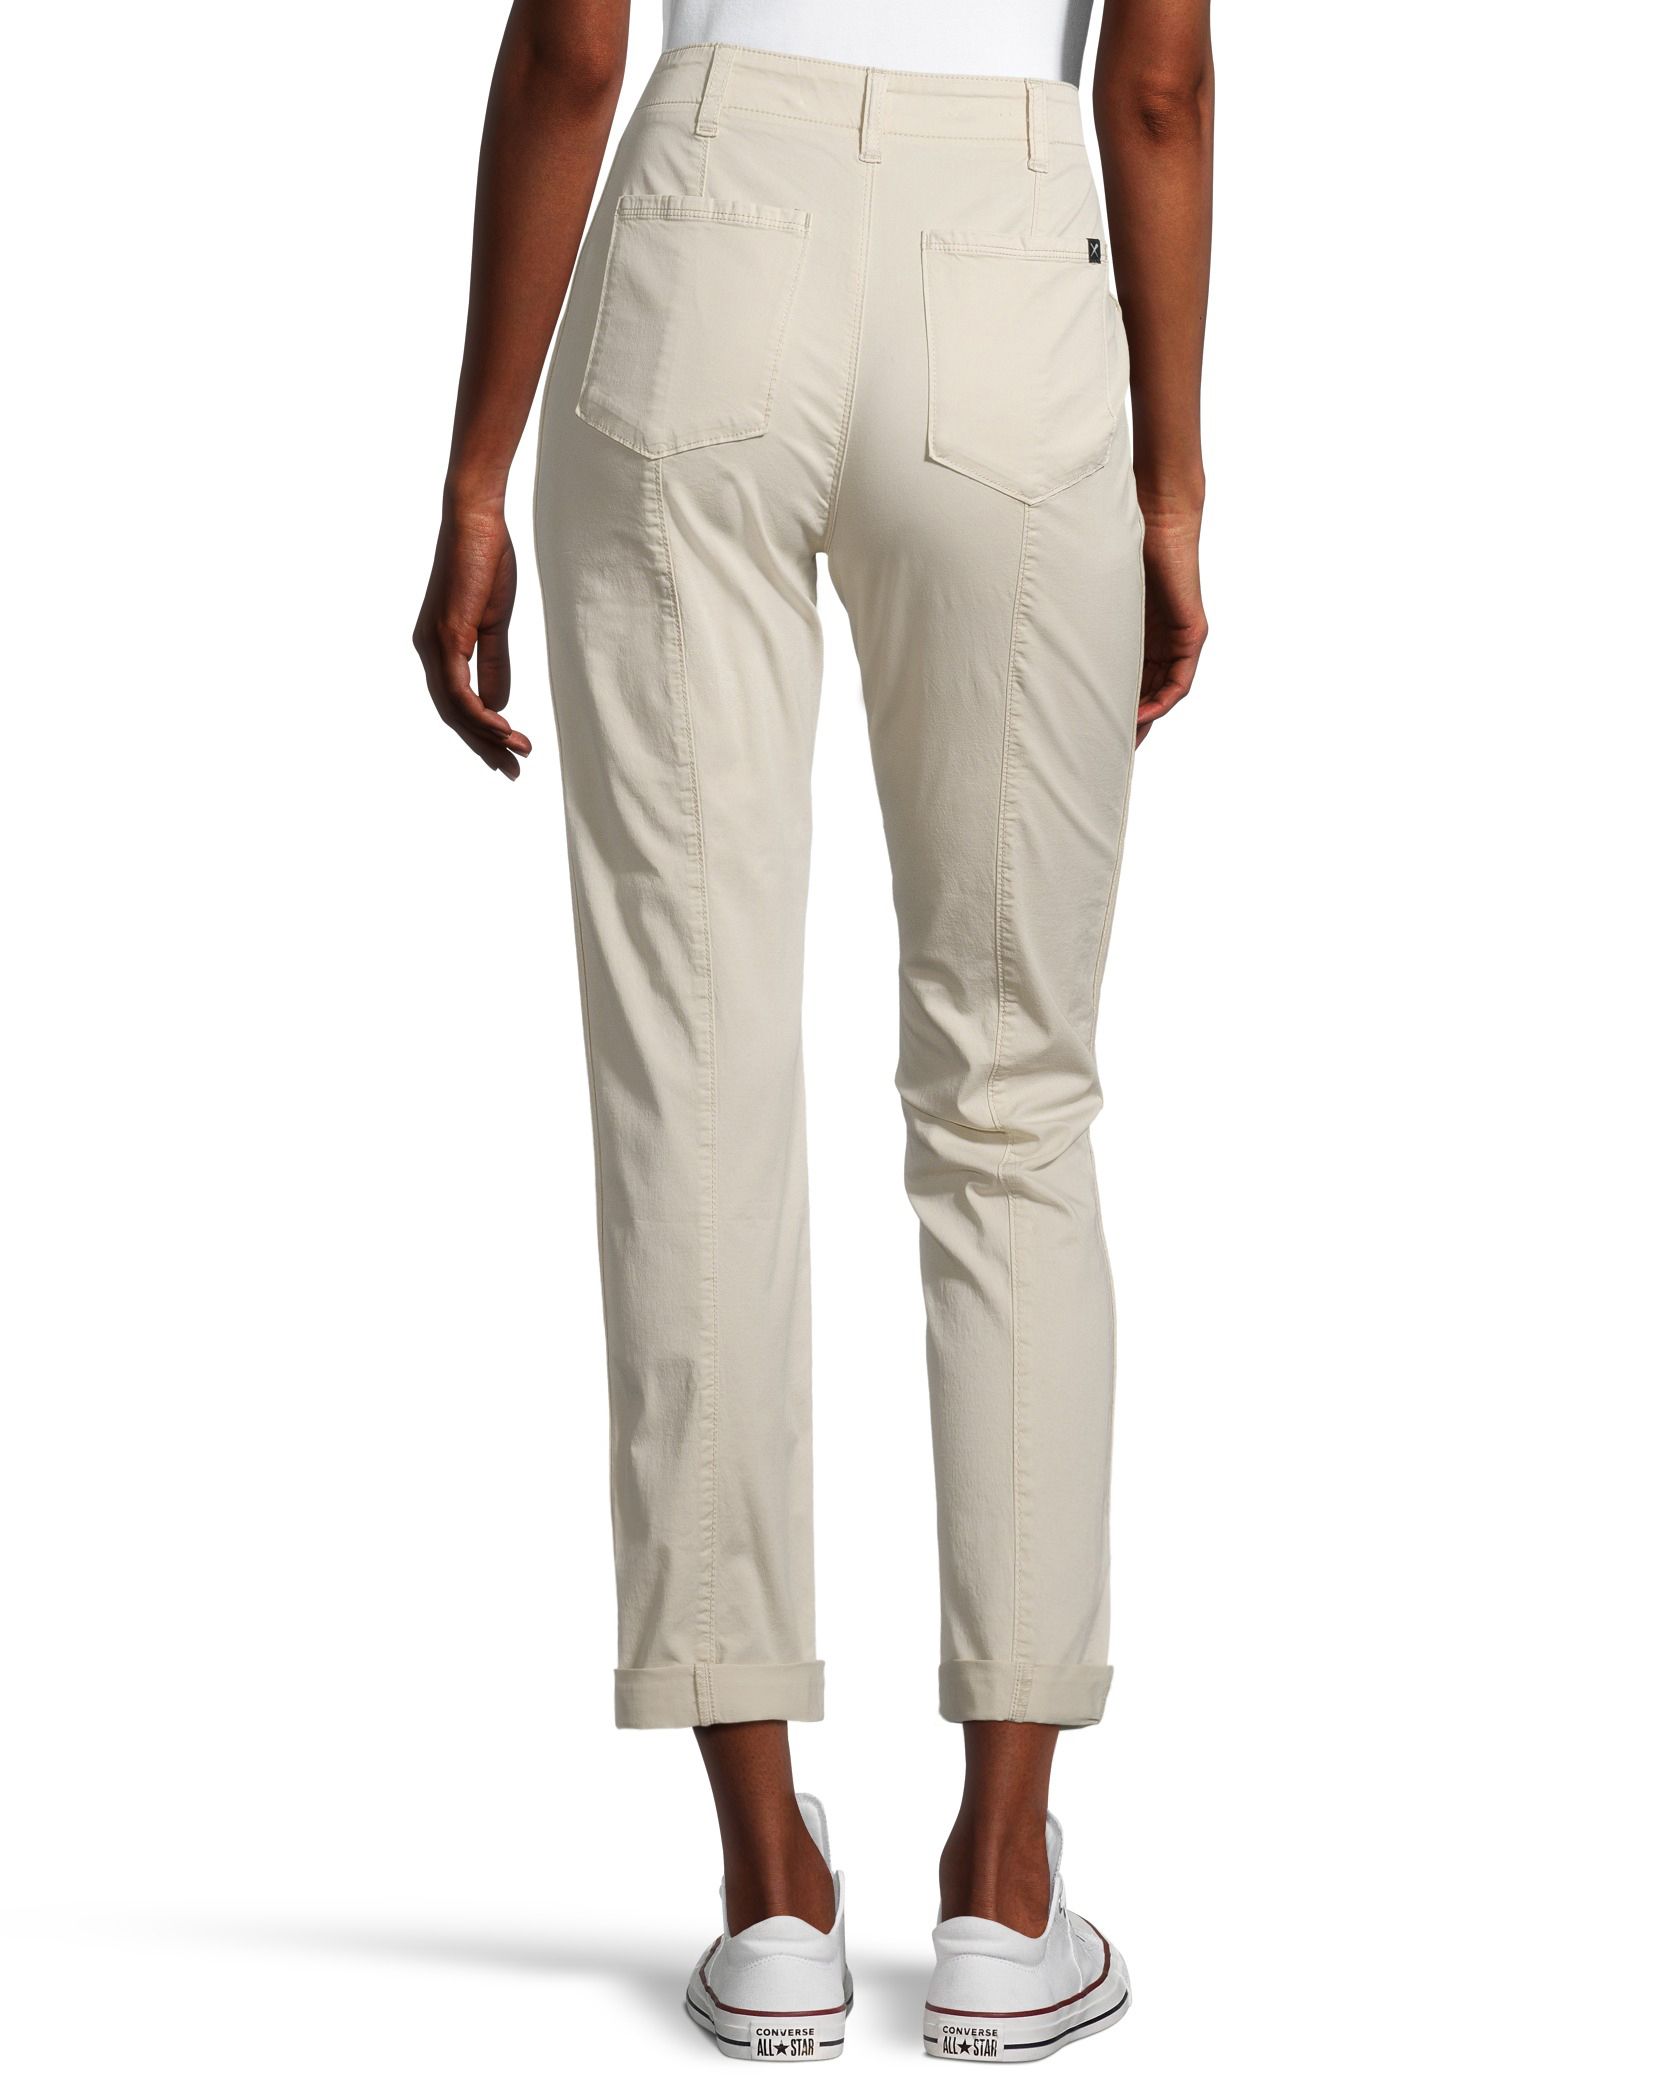 Women's Capri Pants - Size 14 - 3 Pair - clothing & accessories